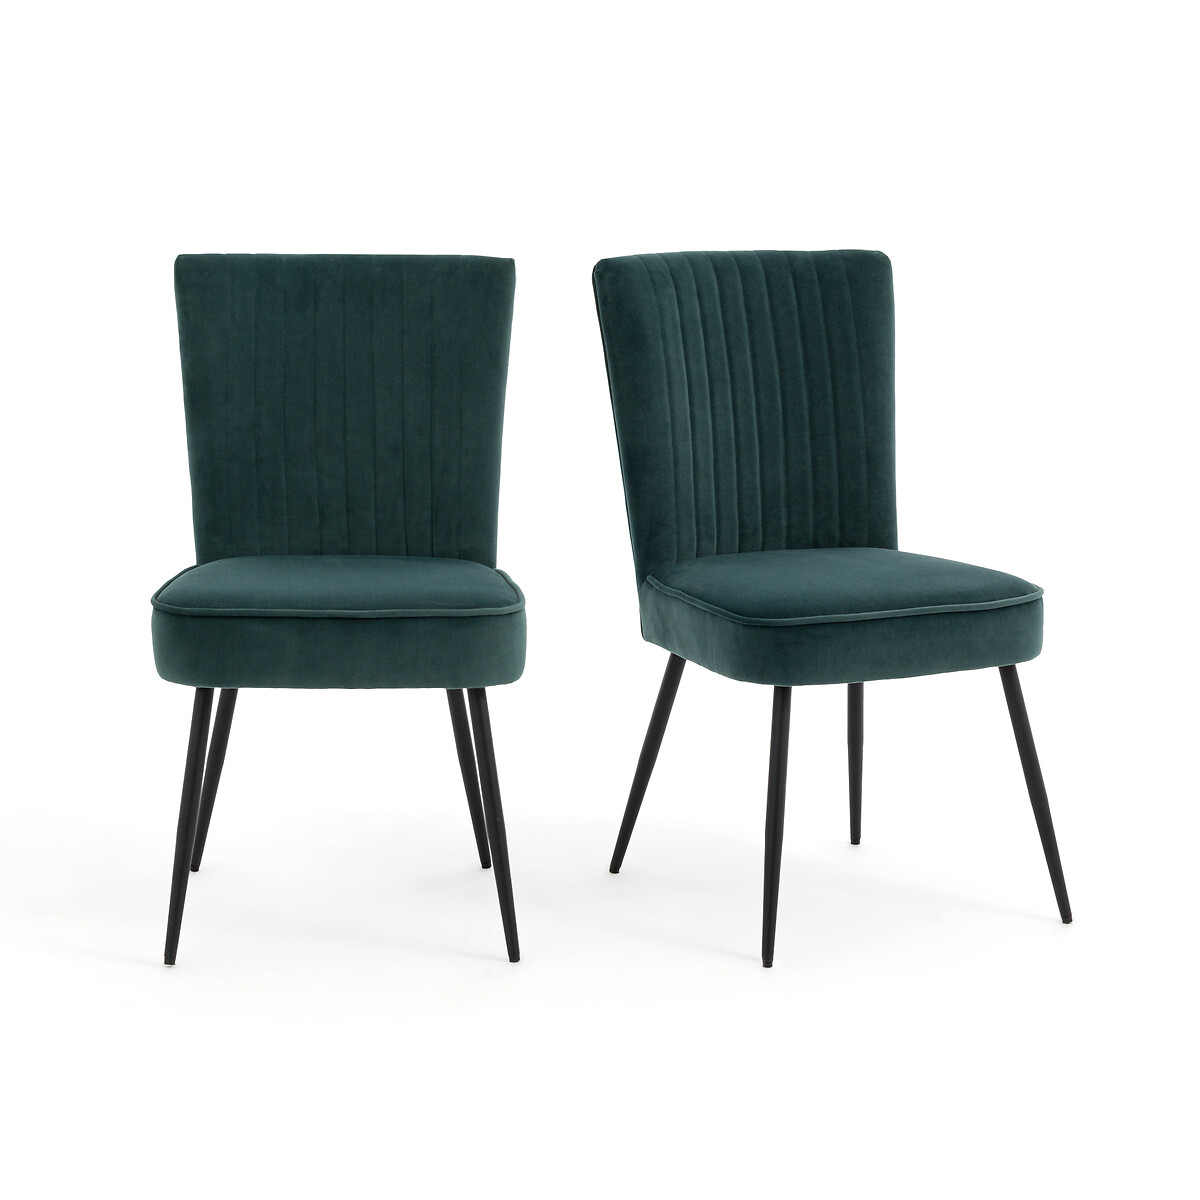 Комплект из 2-х винтажных стульев В стиле 50-х Ronda единый размер зеленый